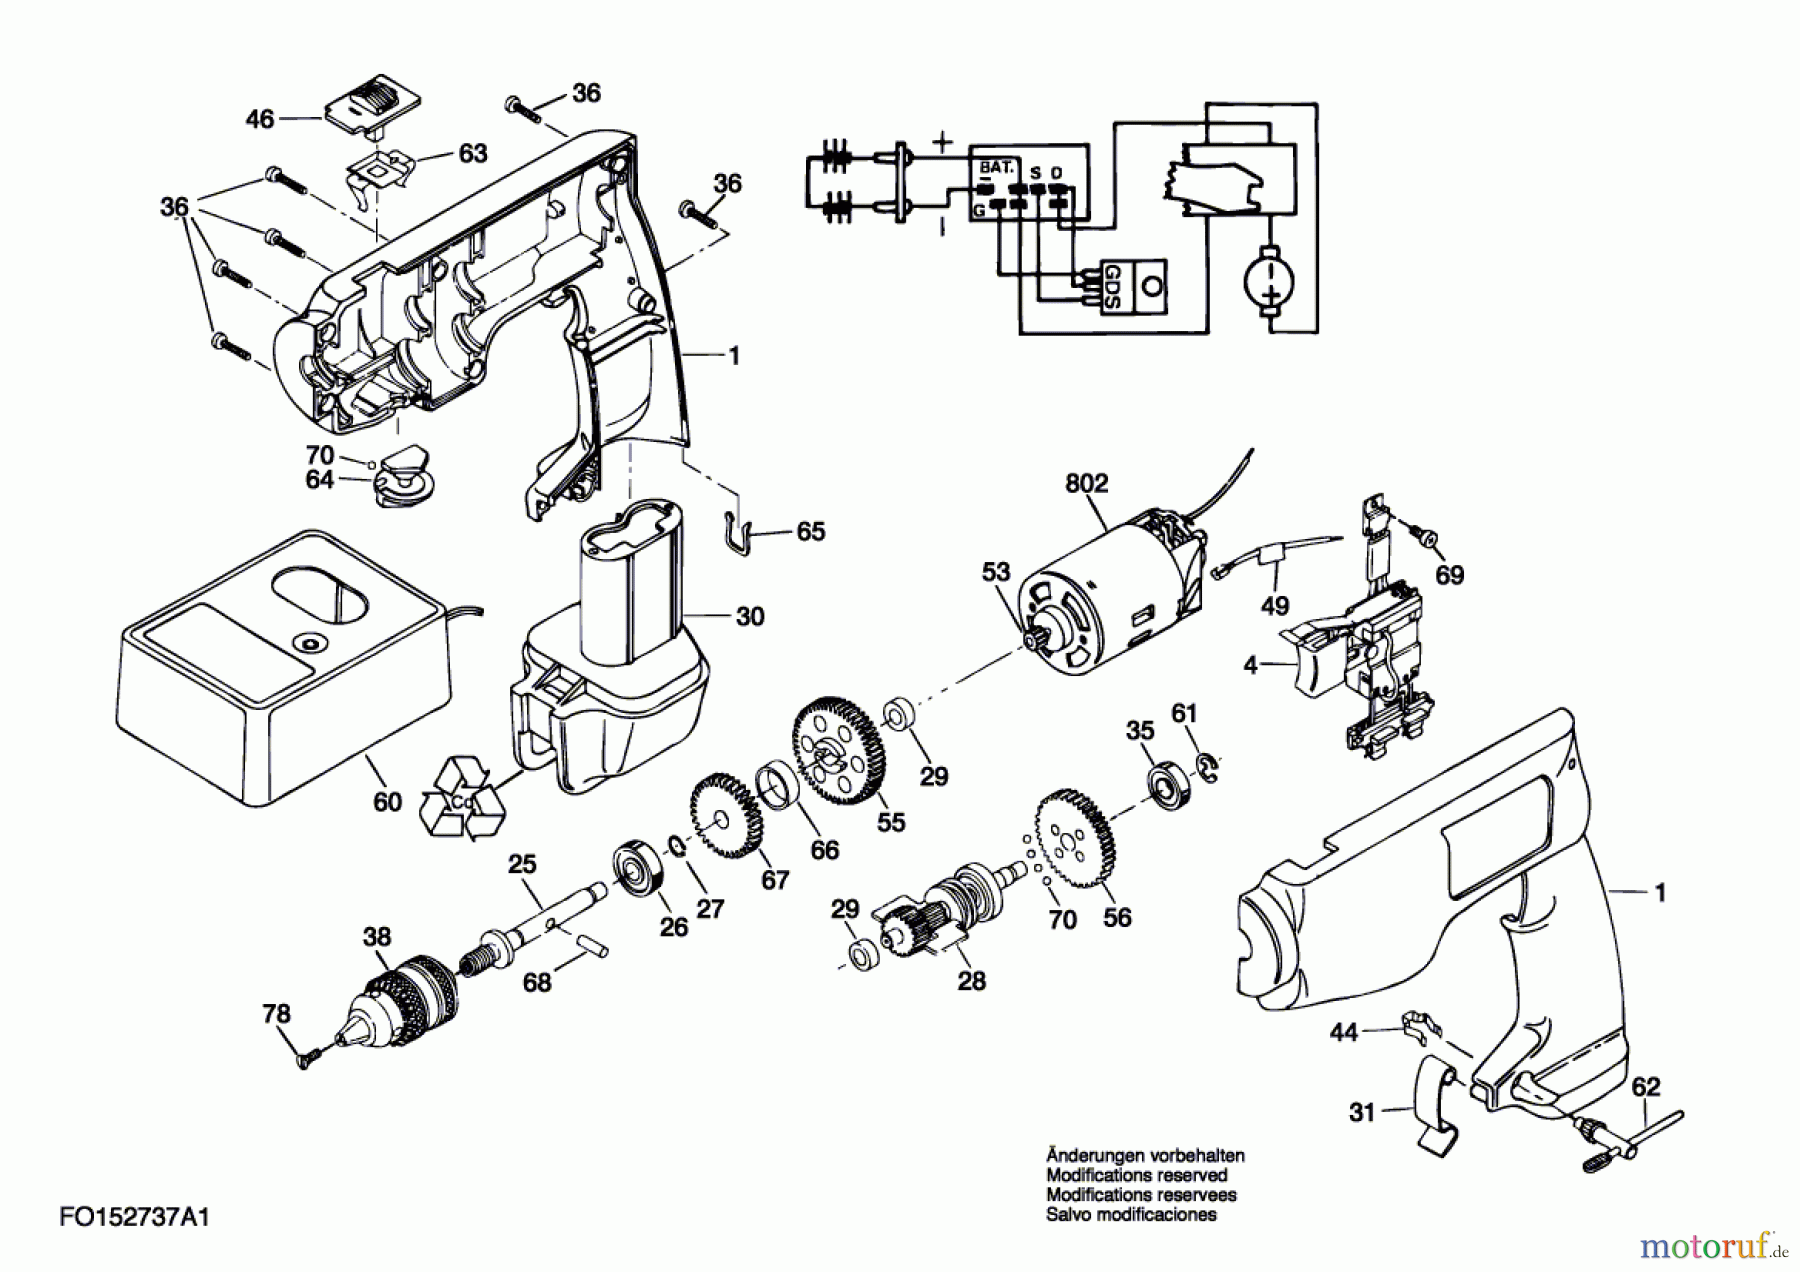  Bosch Werkzeug Bohrschrauber 2737U1 Seite 1